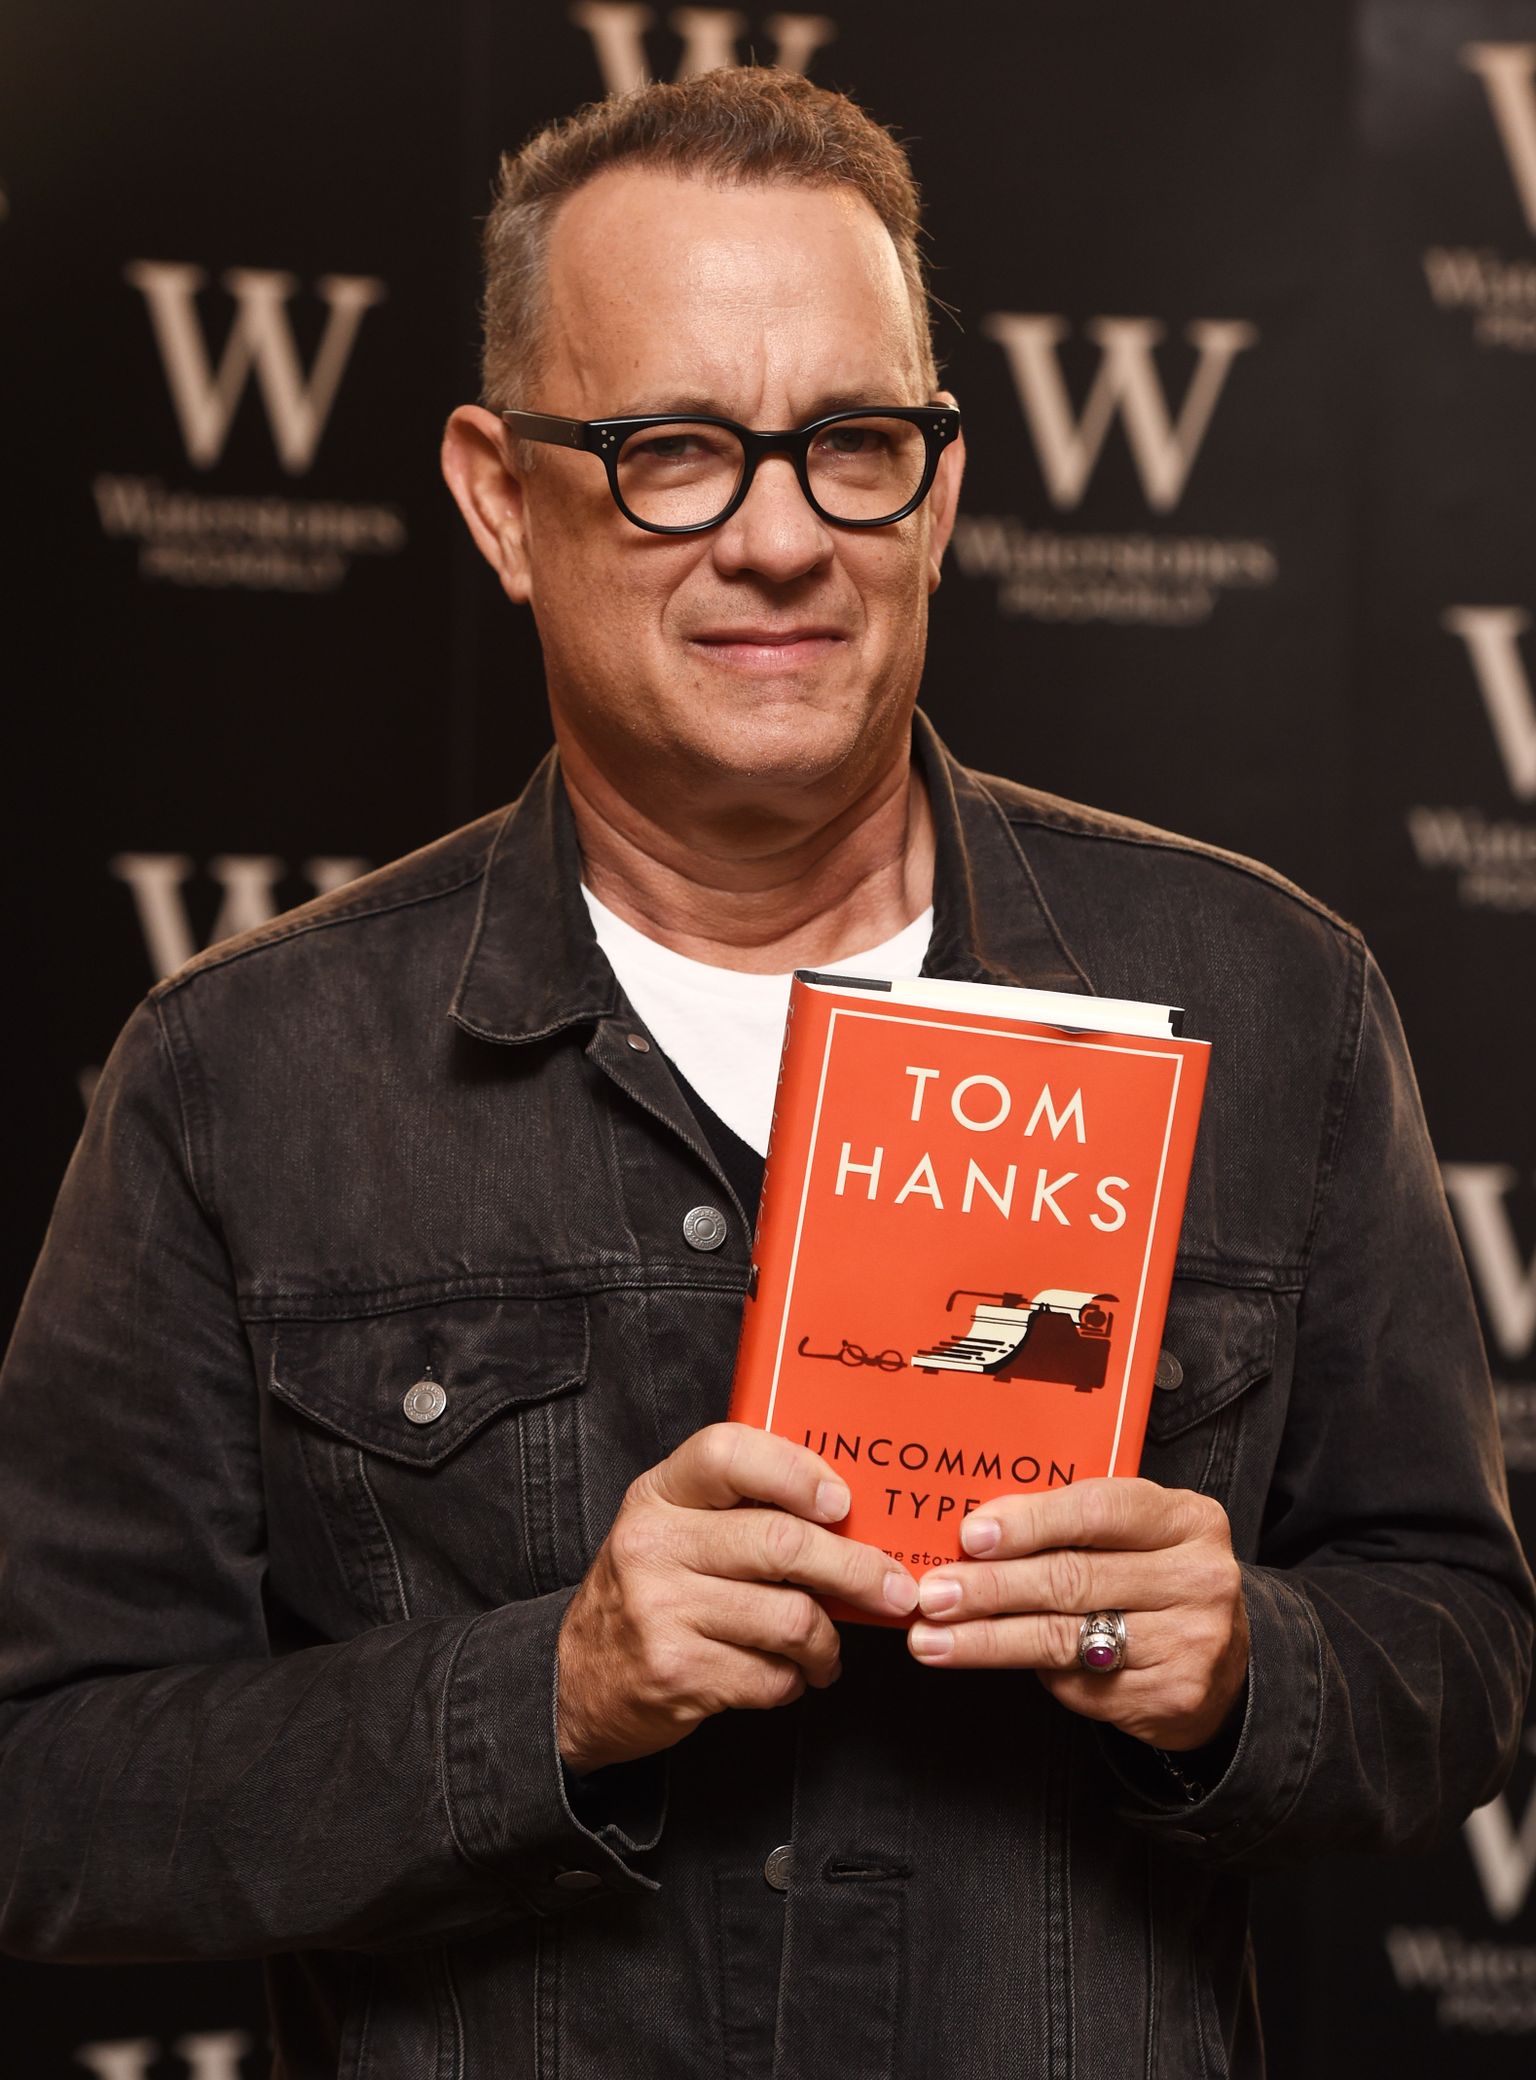 Näitleja Tom Hanks poseerib oma raamatuga "Uncommon Type: Some Stories".